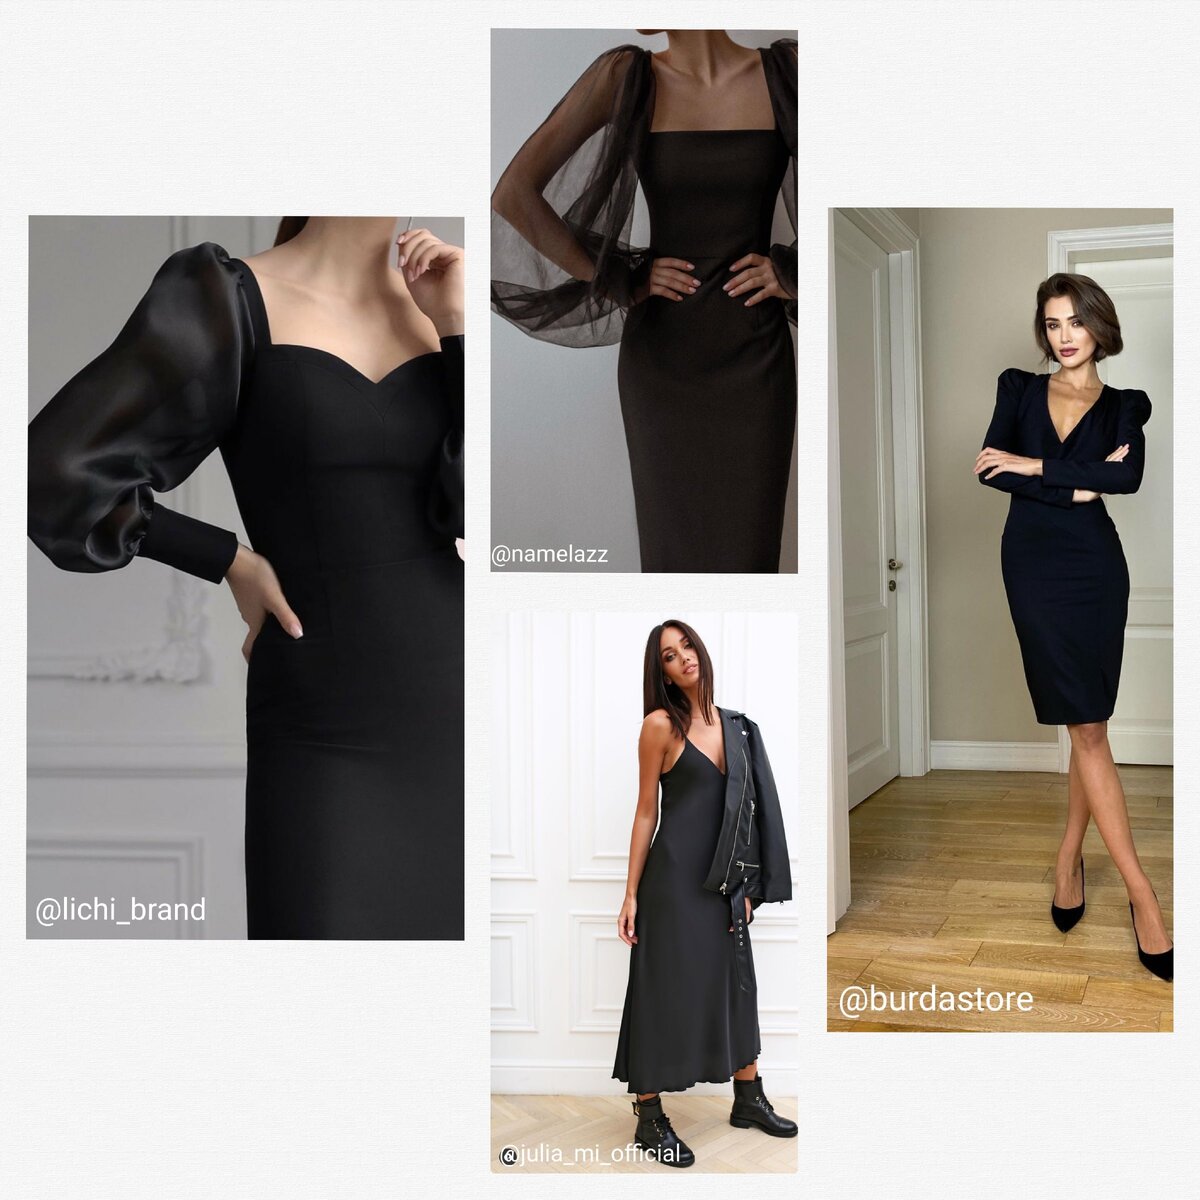 Черные платья различных микробрендов - лаконичное и стильное решение вне времени.